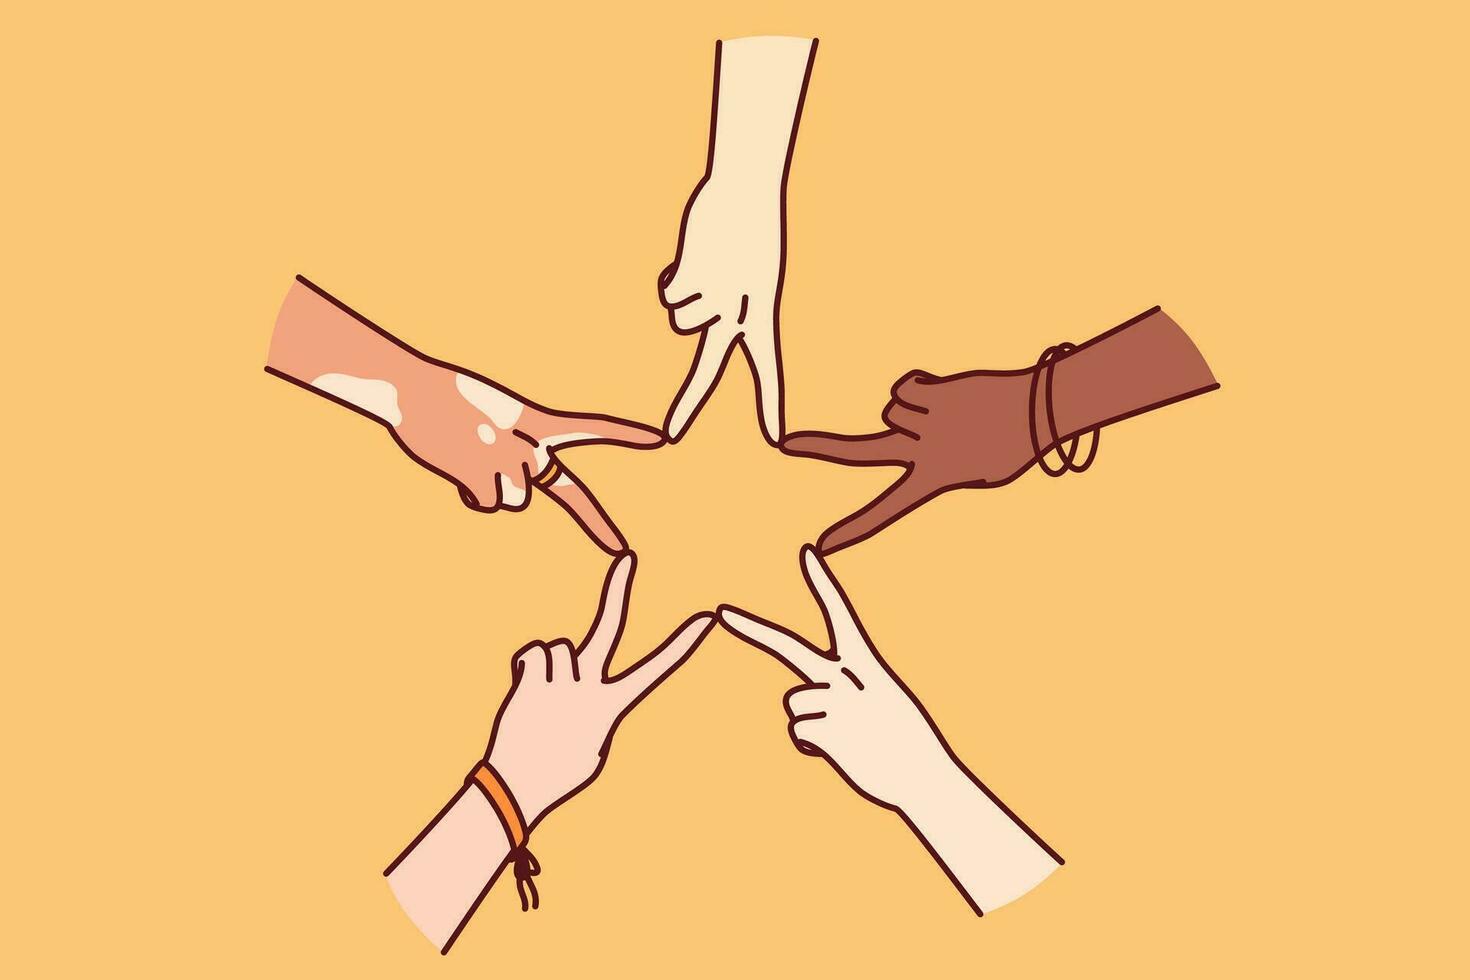 handen van multiraciaal mensen maken ster vorm van vingers, voor concept tolerantie en non-discriminatie. handen van verschillend mensen samen tonen gebaar van solidariteit en vrede vector